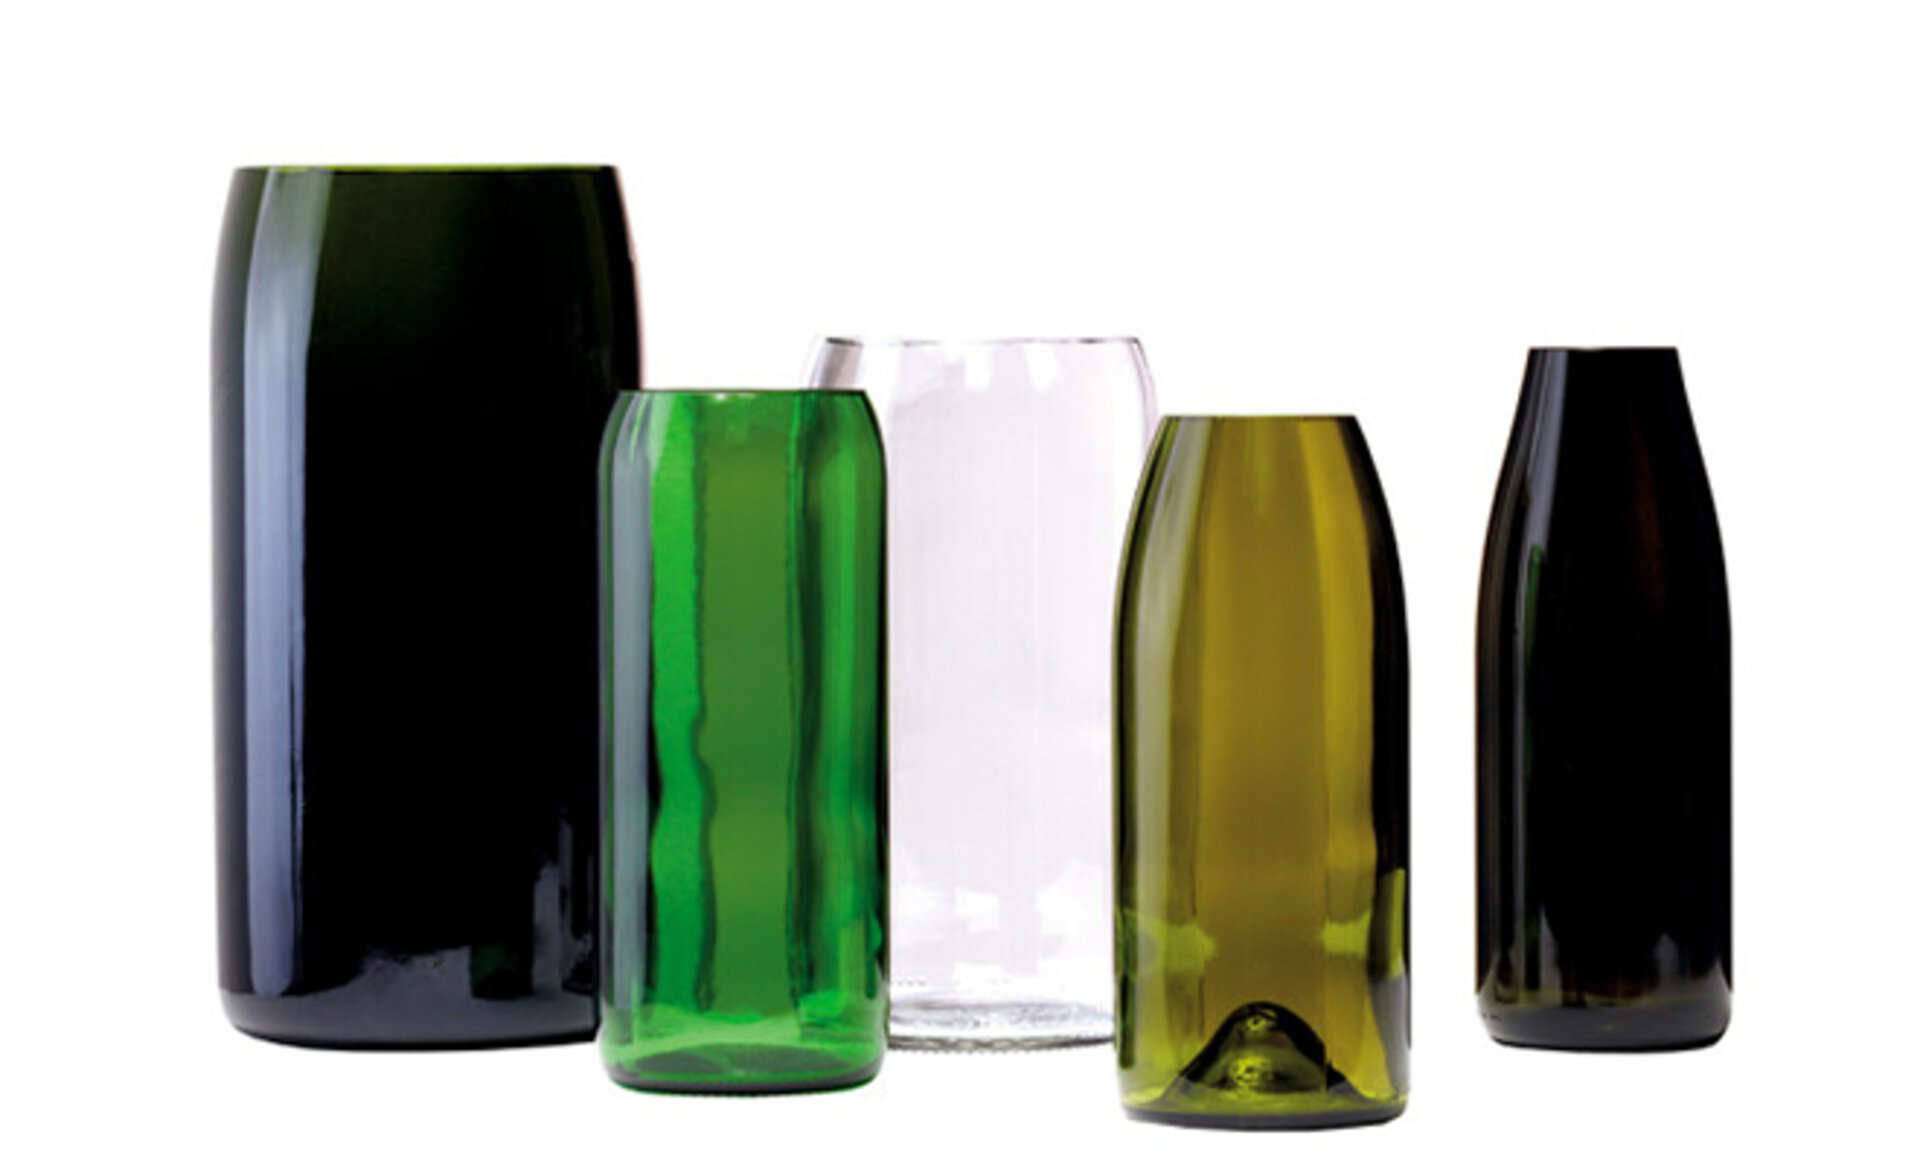 Designer Vasen aus recykelten Flaschen von Artificial by interni by inhofer